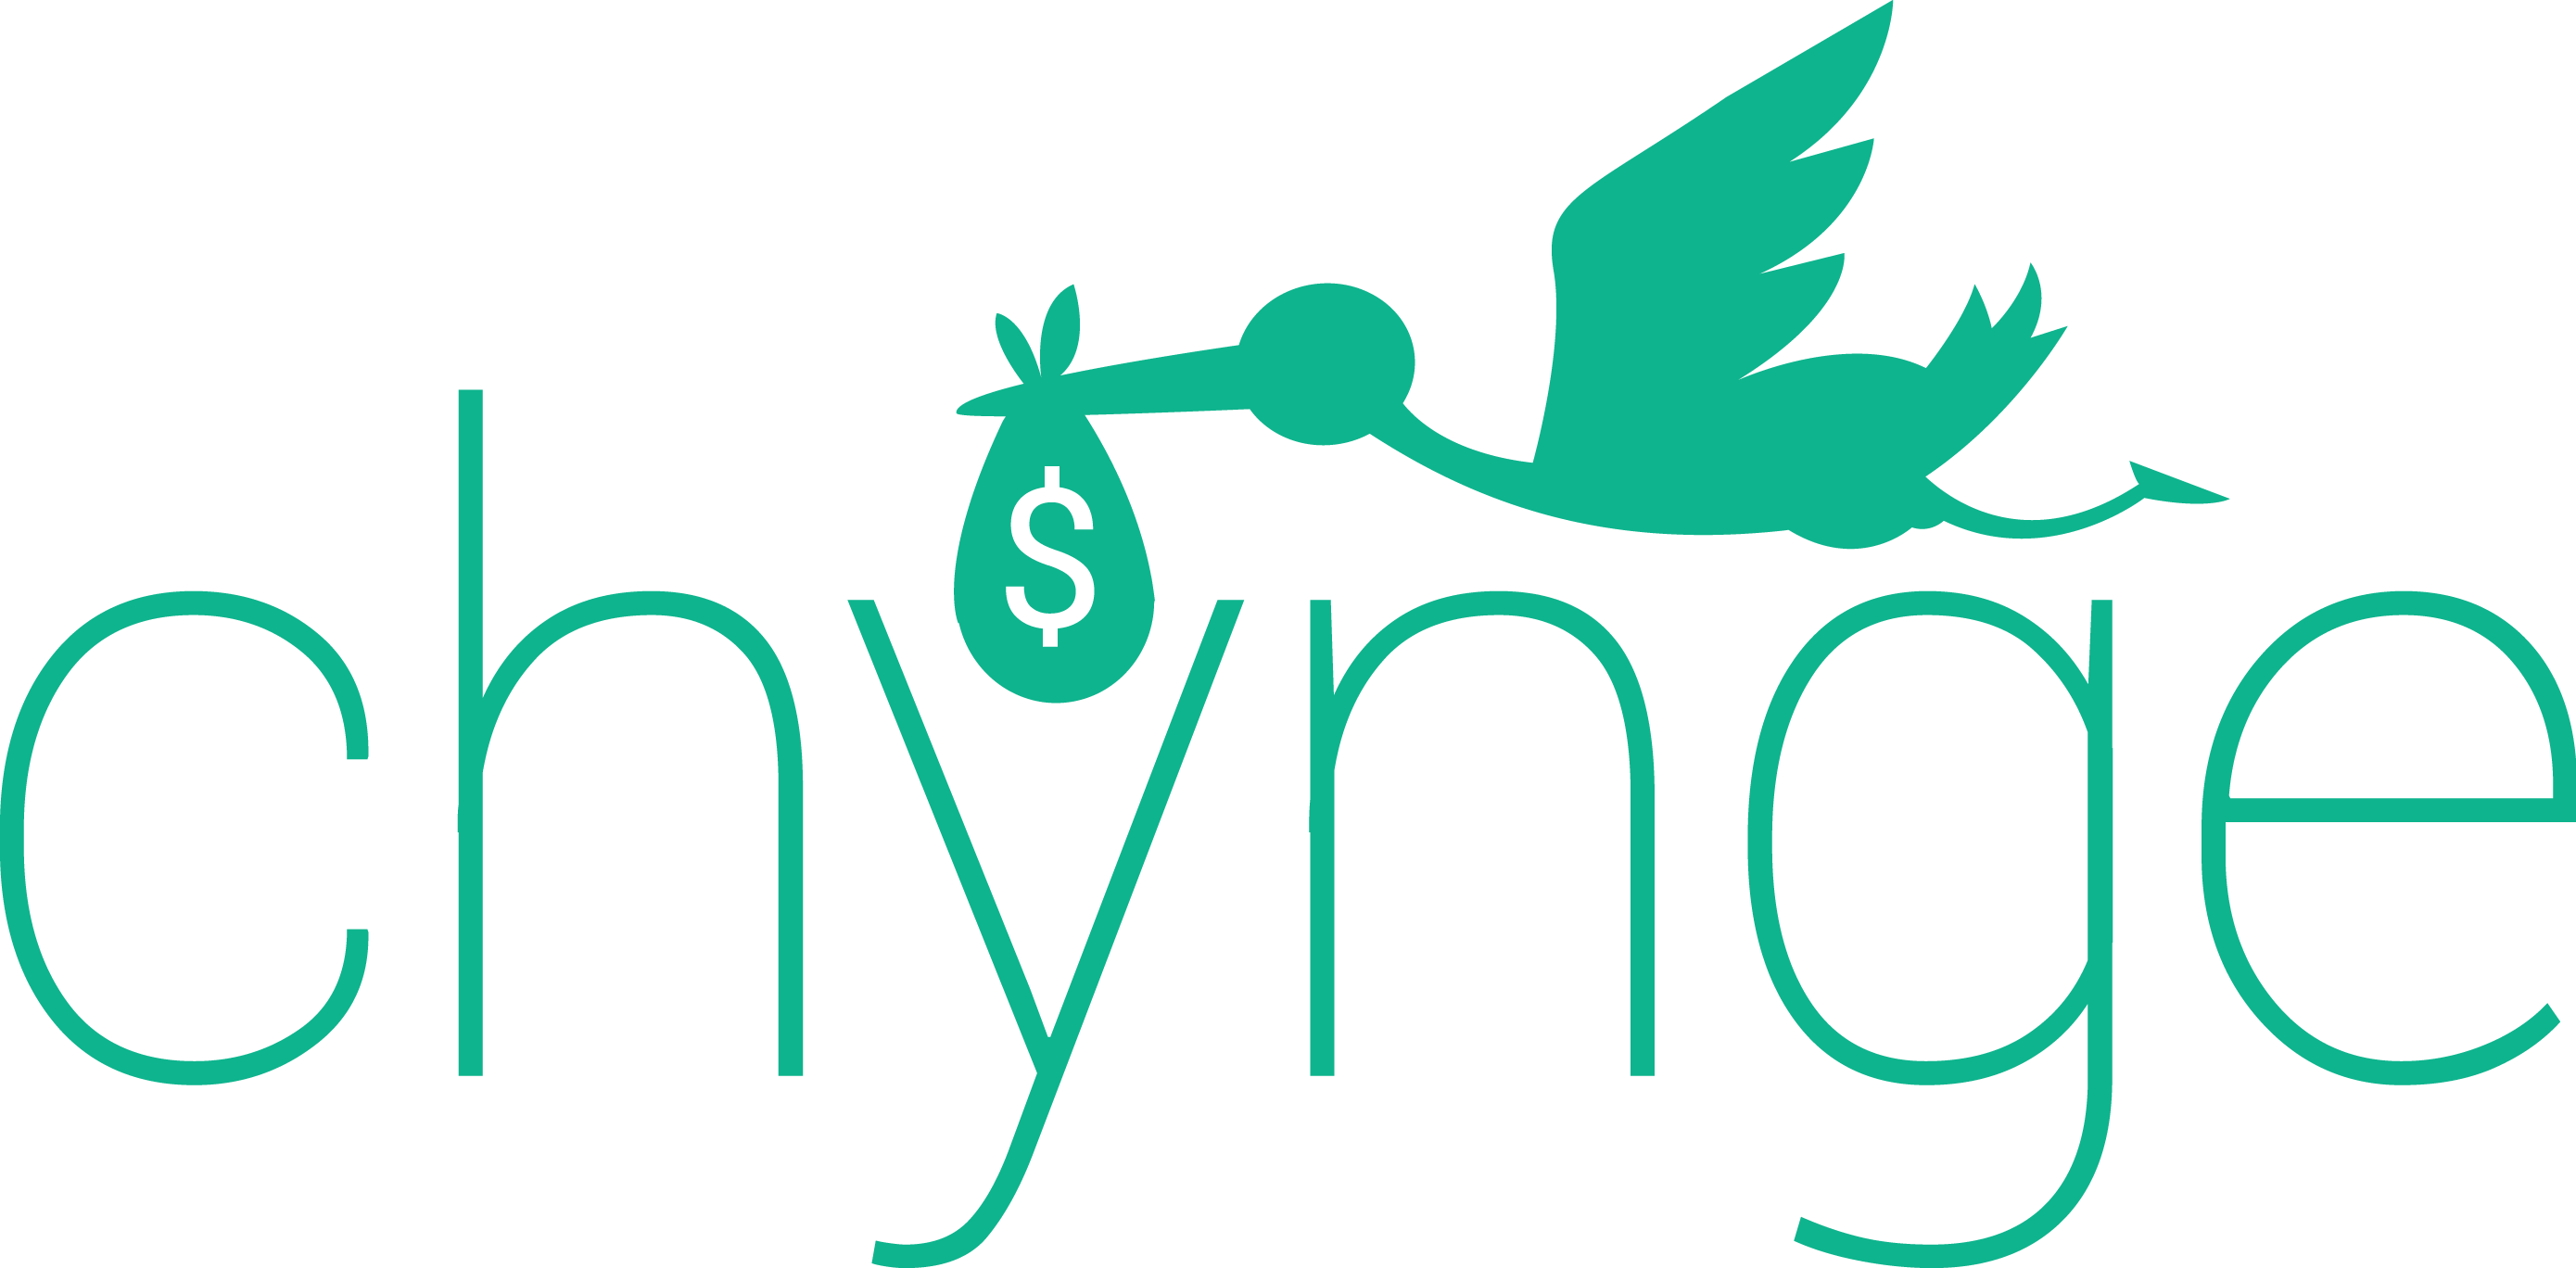 chynge logo